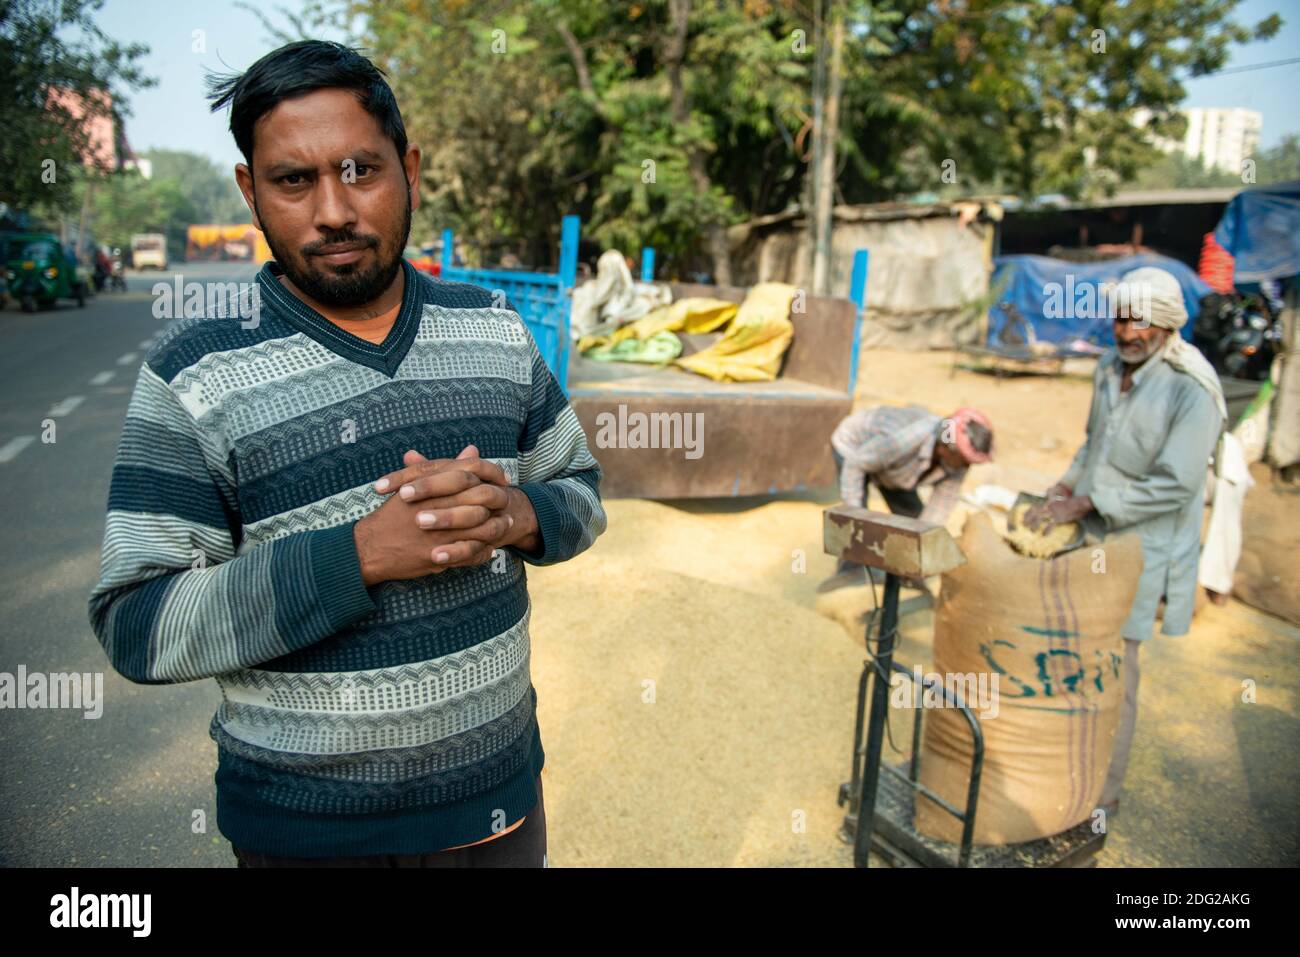 Agricoltore Manoj Singh 33 anni da Ghaziabad, Uttar Pradesh sembra deluso il market.Manoj è venuto al mercato per vendere riso paddy, come si lamenta dei prezzi bassi sulla vendita di cereali alimentari rispetto allo scorso anno. Foto Stock